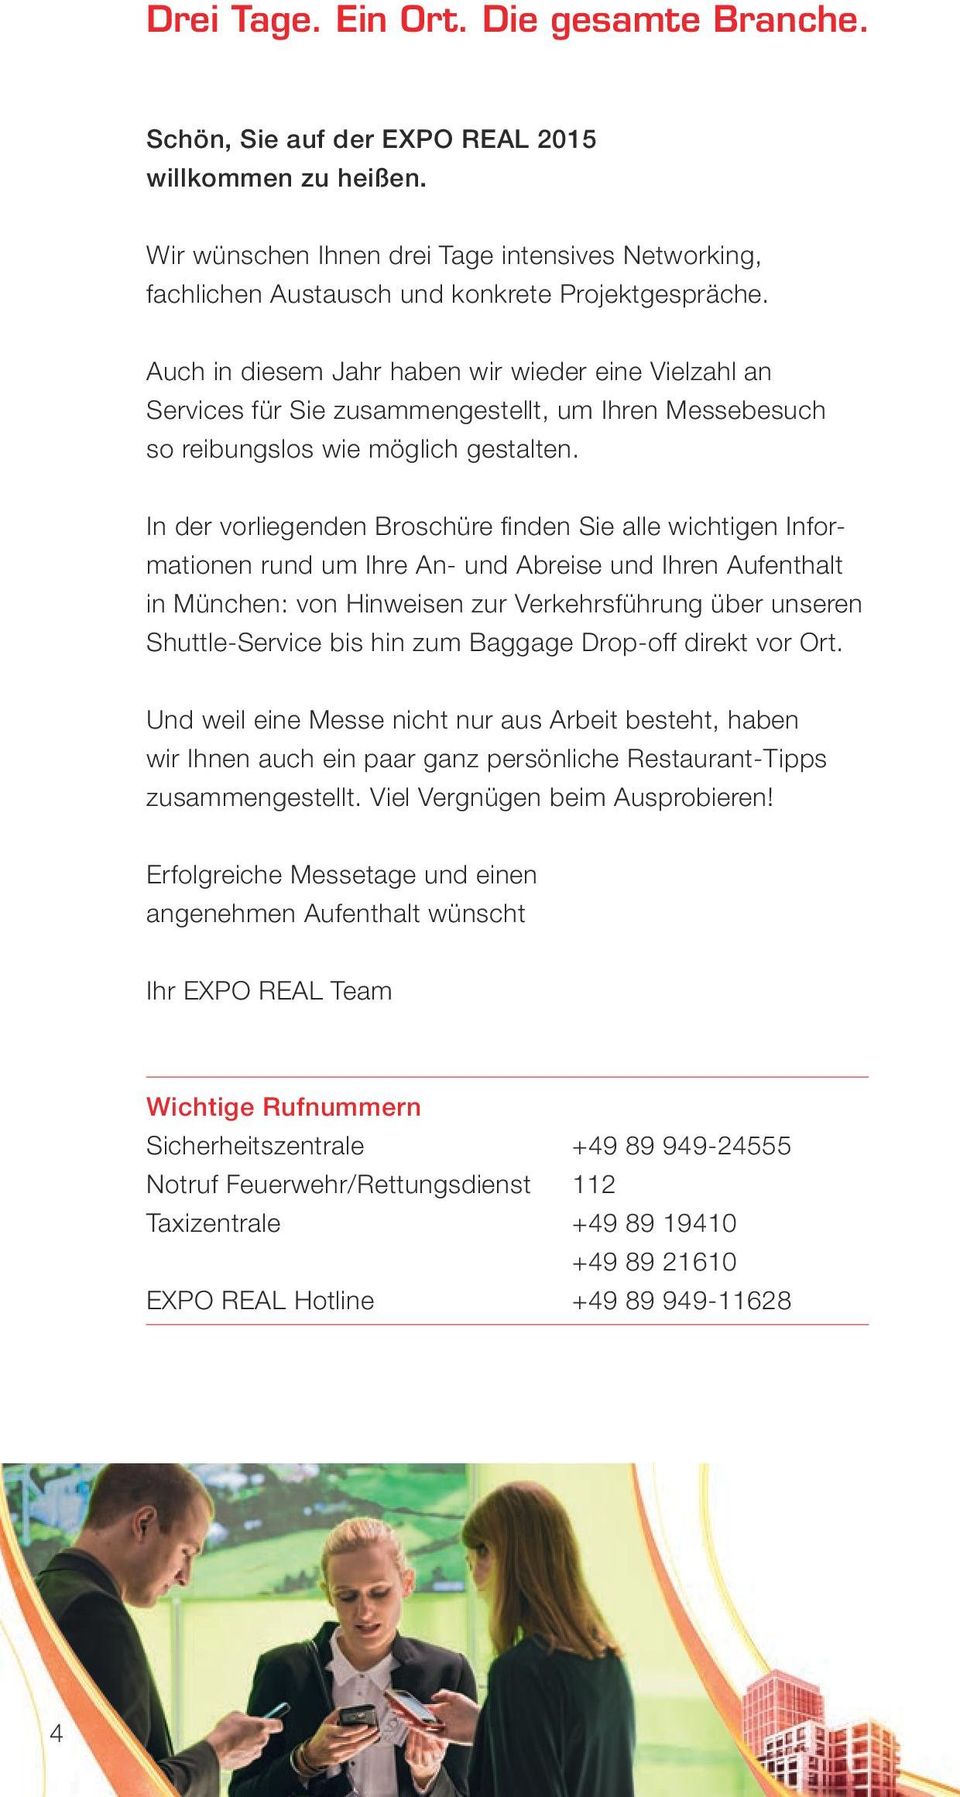 In der vorliegenden Broschüre finden Sie alle wichtigen Informationen rund um Ihre An- und Abreise und Ihren Aufenthalt in München: von Hinweisen zur Verkehrsführung über unseren Shuttle-Service bis